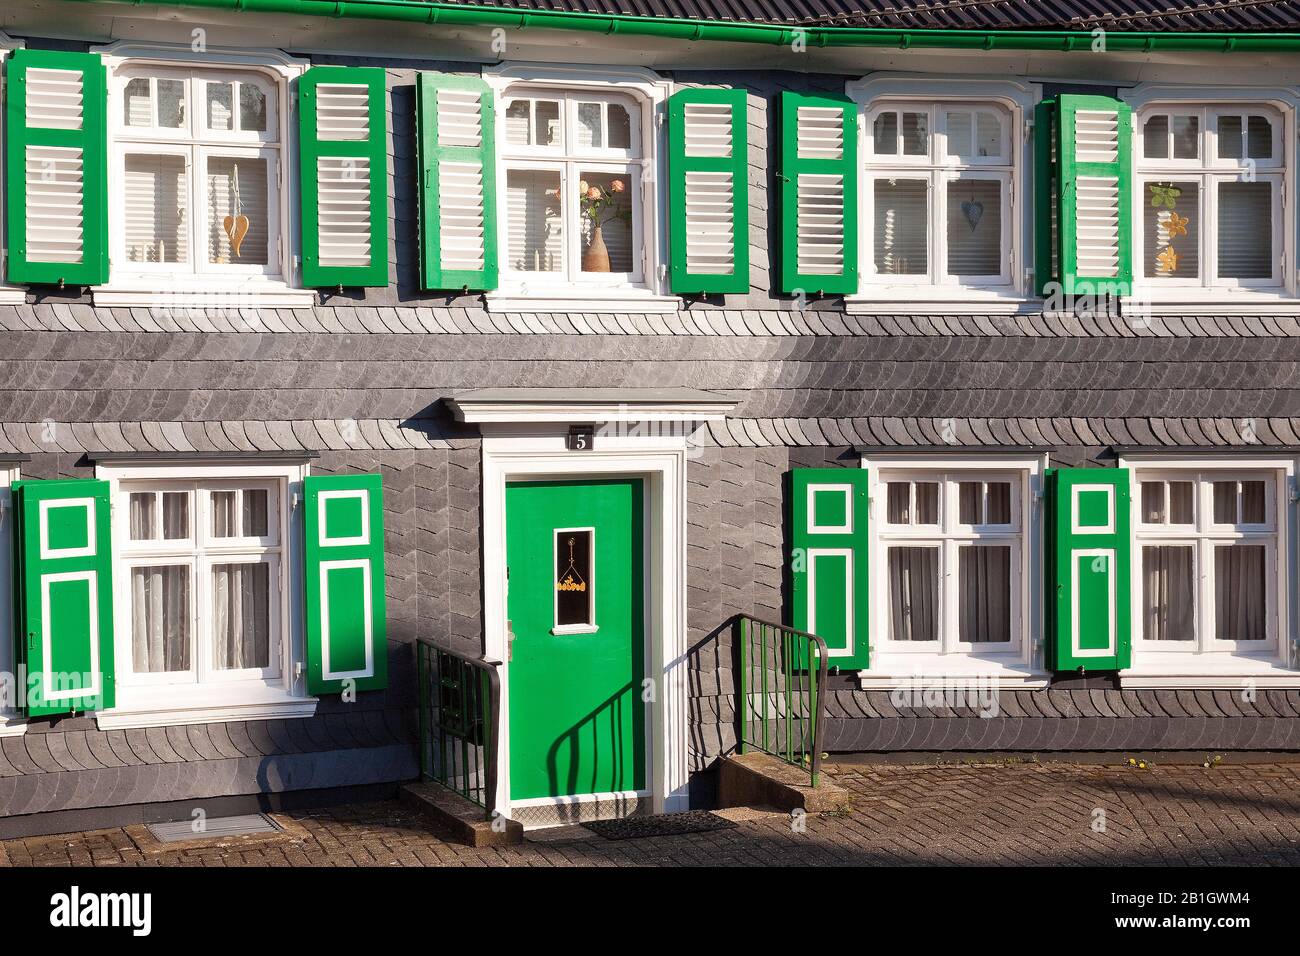 Façade d'une maison à colombages, Allemagne, Rhénanie-du-Nord-Westphalie, Bergisches Land, Radevormwald Banque D'Images